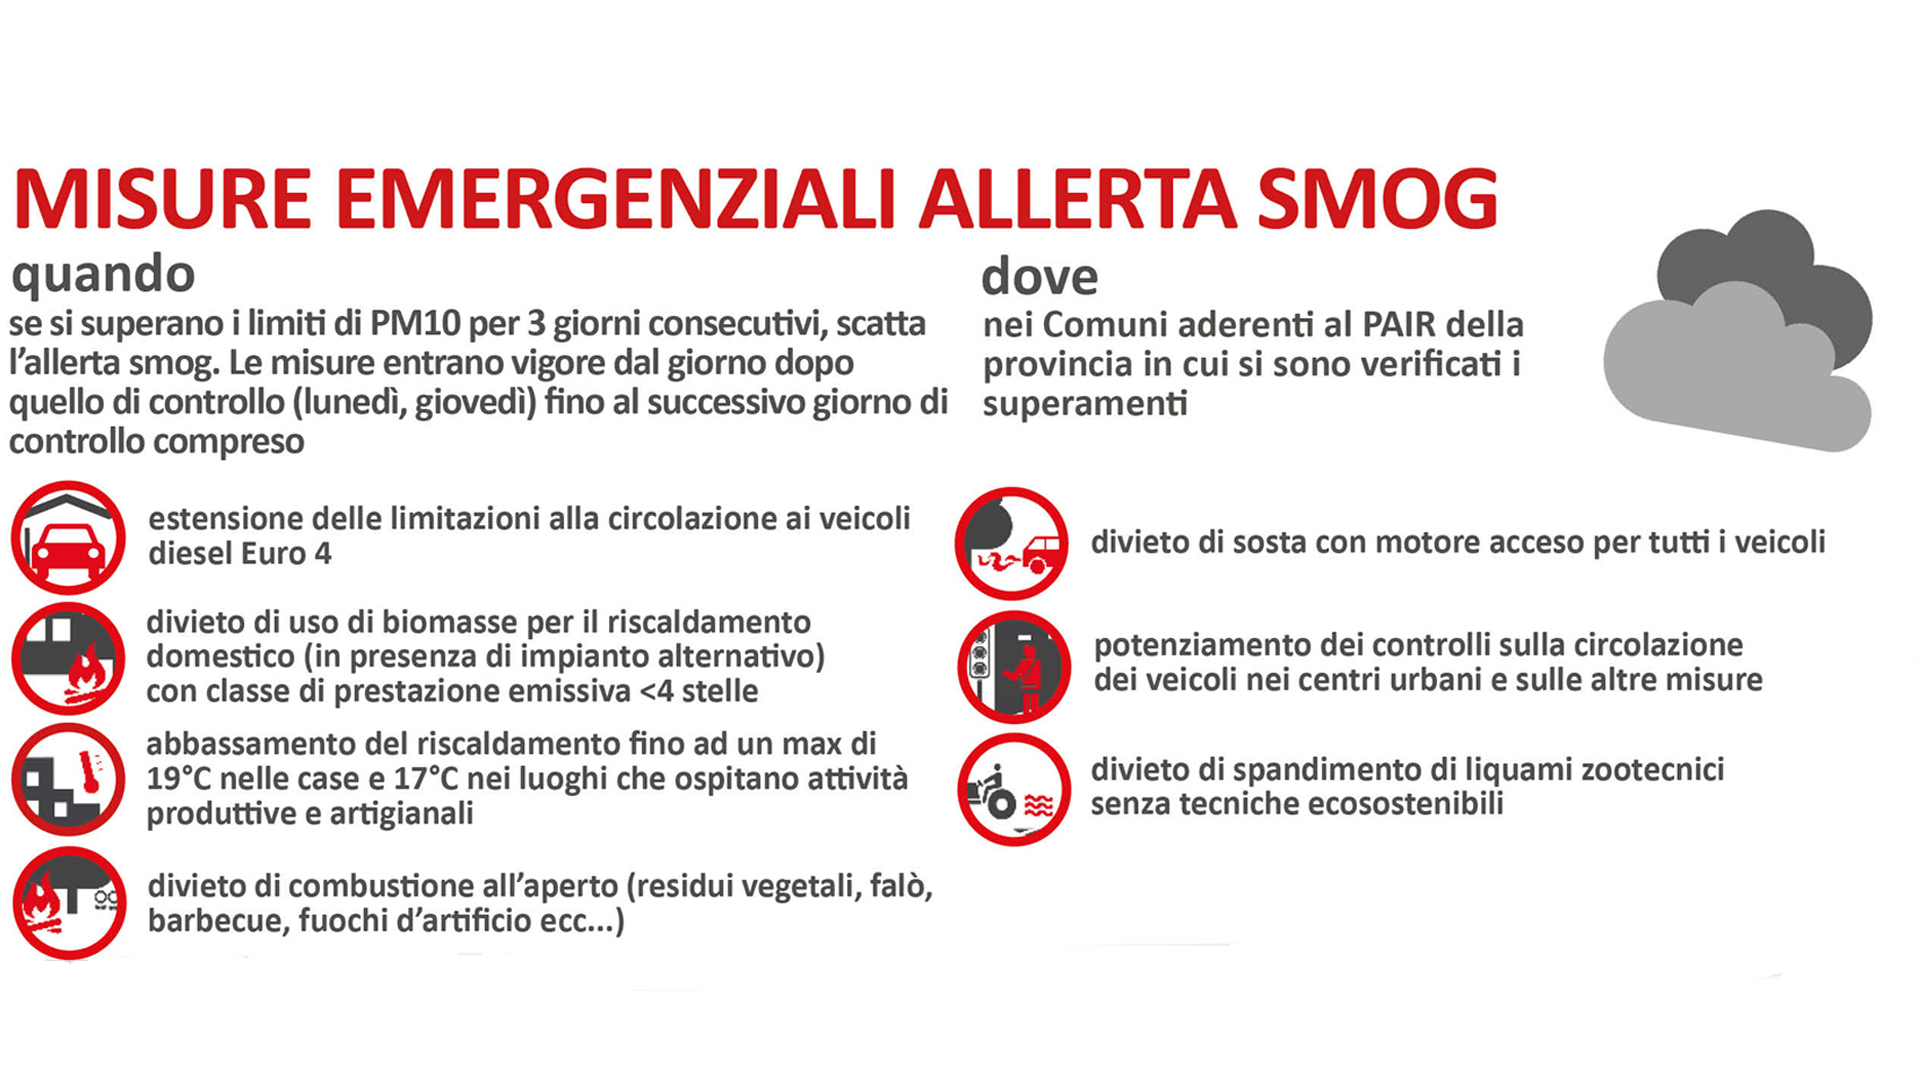 Misure antismog, superati i limiti di PM10: dall'11 al 14 gennaio scattano le misure emergenziali a Bologna, Imola e nei Comuni dell'agglomerato